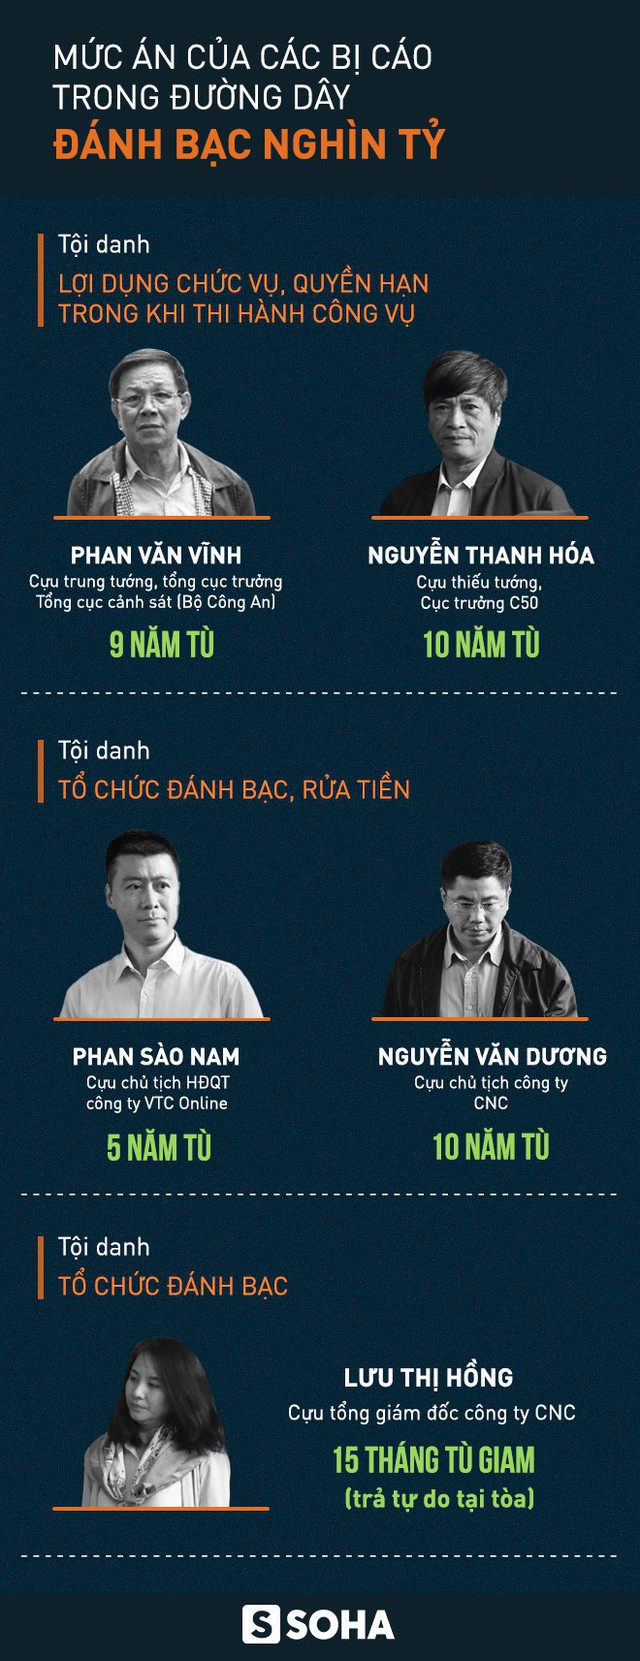 Cựu tổng cục trưởng Cảnh sát Phan Văn Vĩnh lĩnh 9 năm tù, cựu tướng Nguyễn Thanh Hóa 10 năm tù - Ảnh 1.